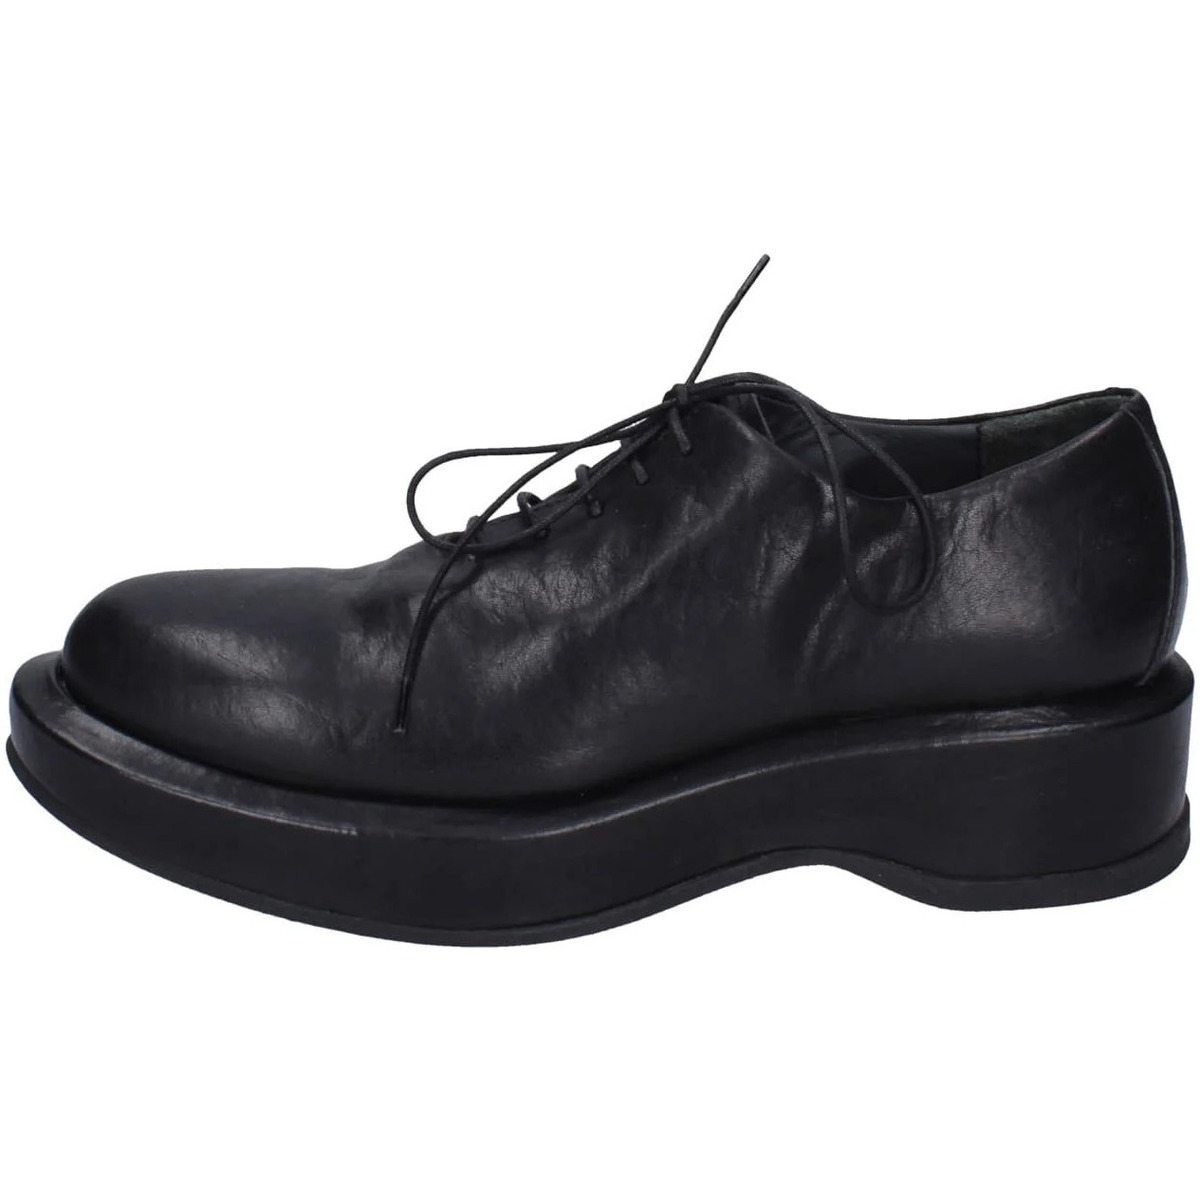 Παπούτσια Πόλης Moma EY499 82302A-CU